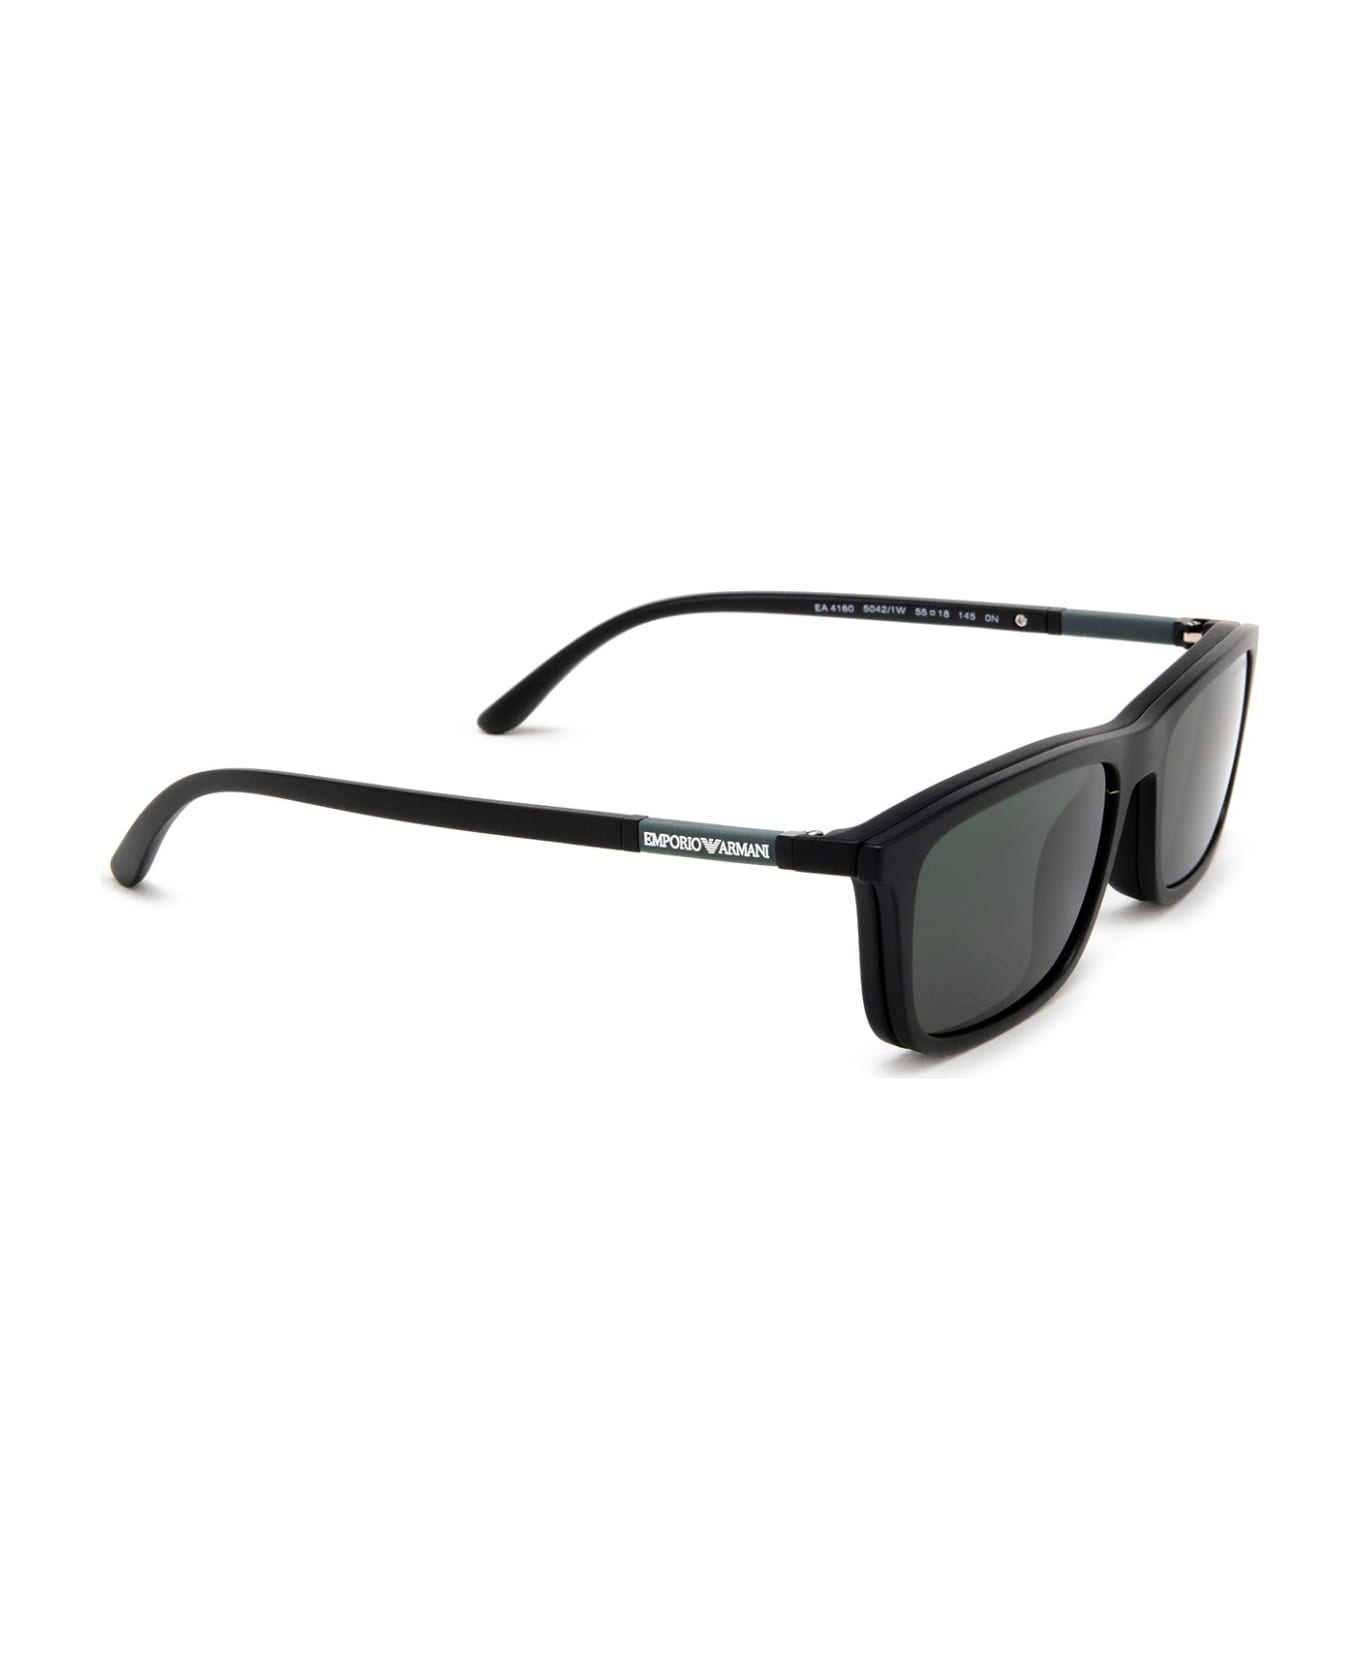 Emporio Armani Ea4160 Matte Black Sunglasses - Matte Black